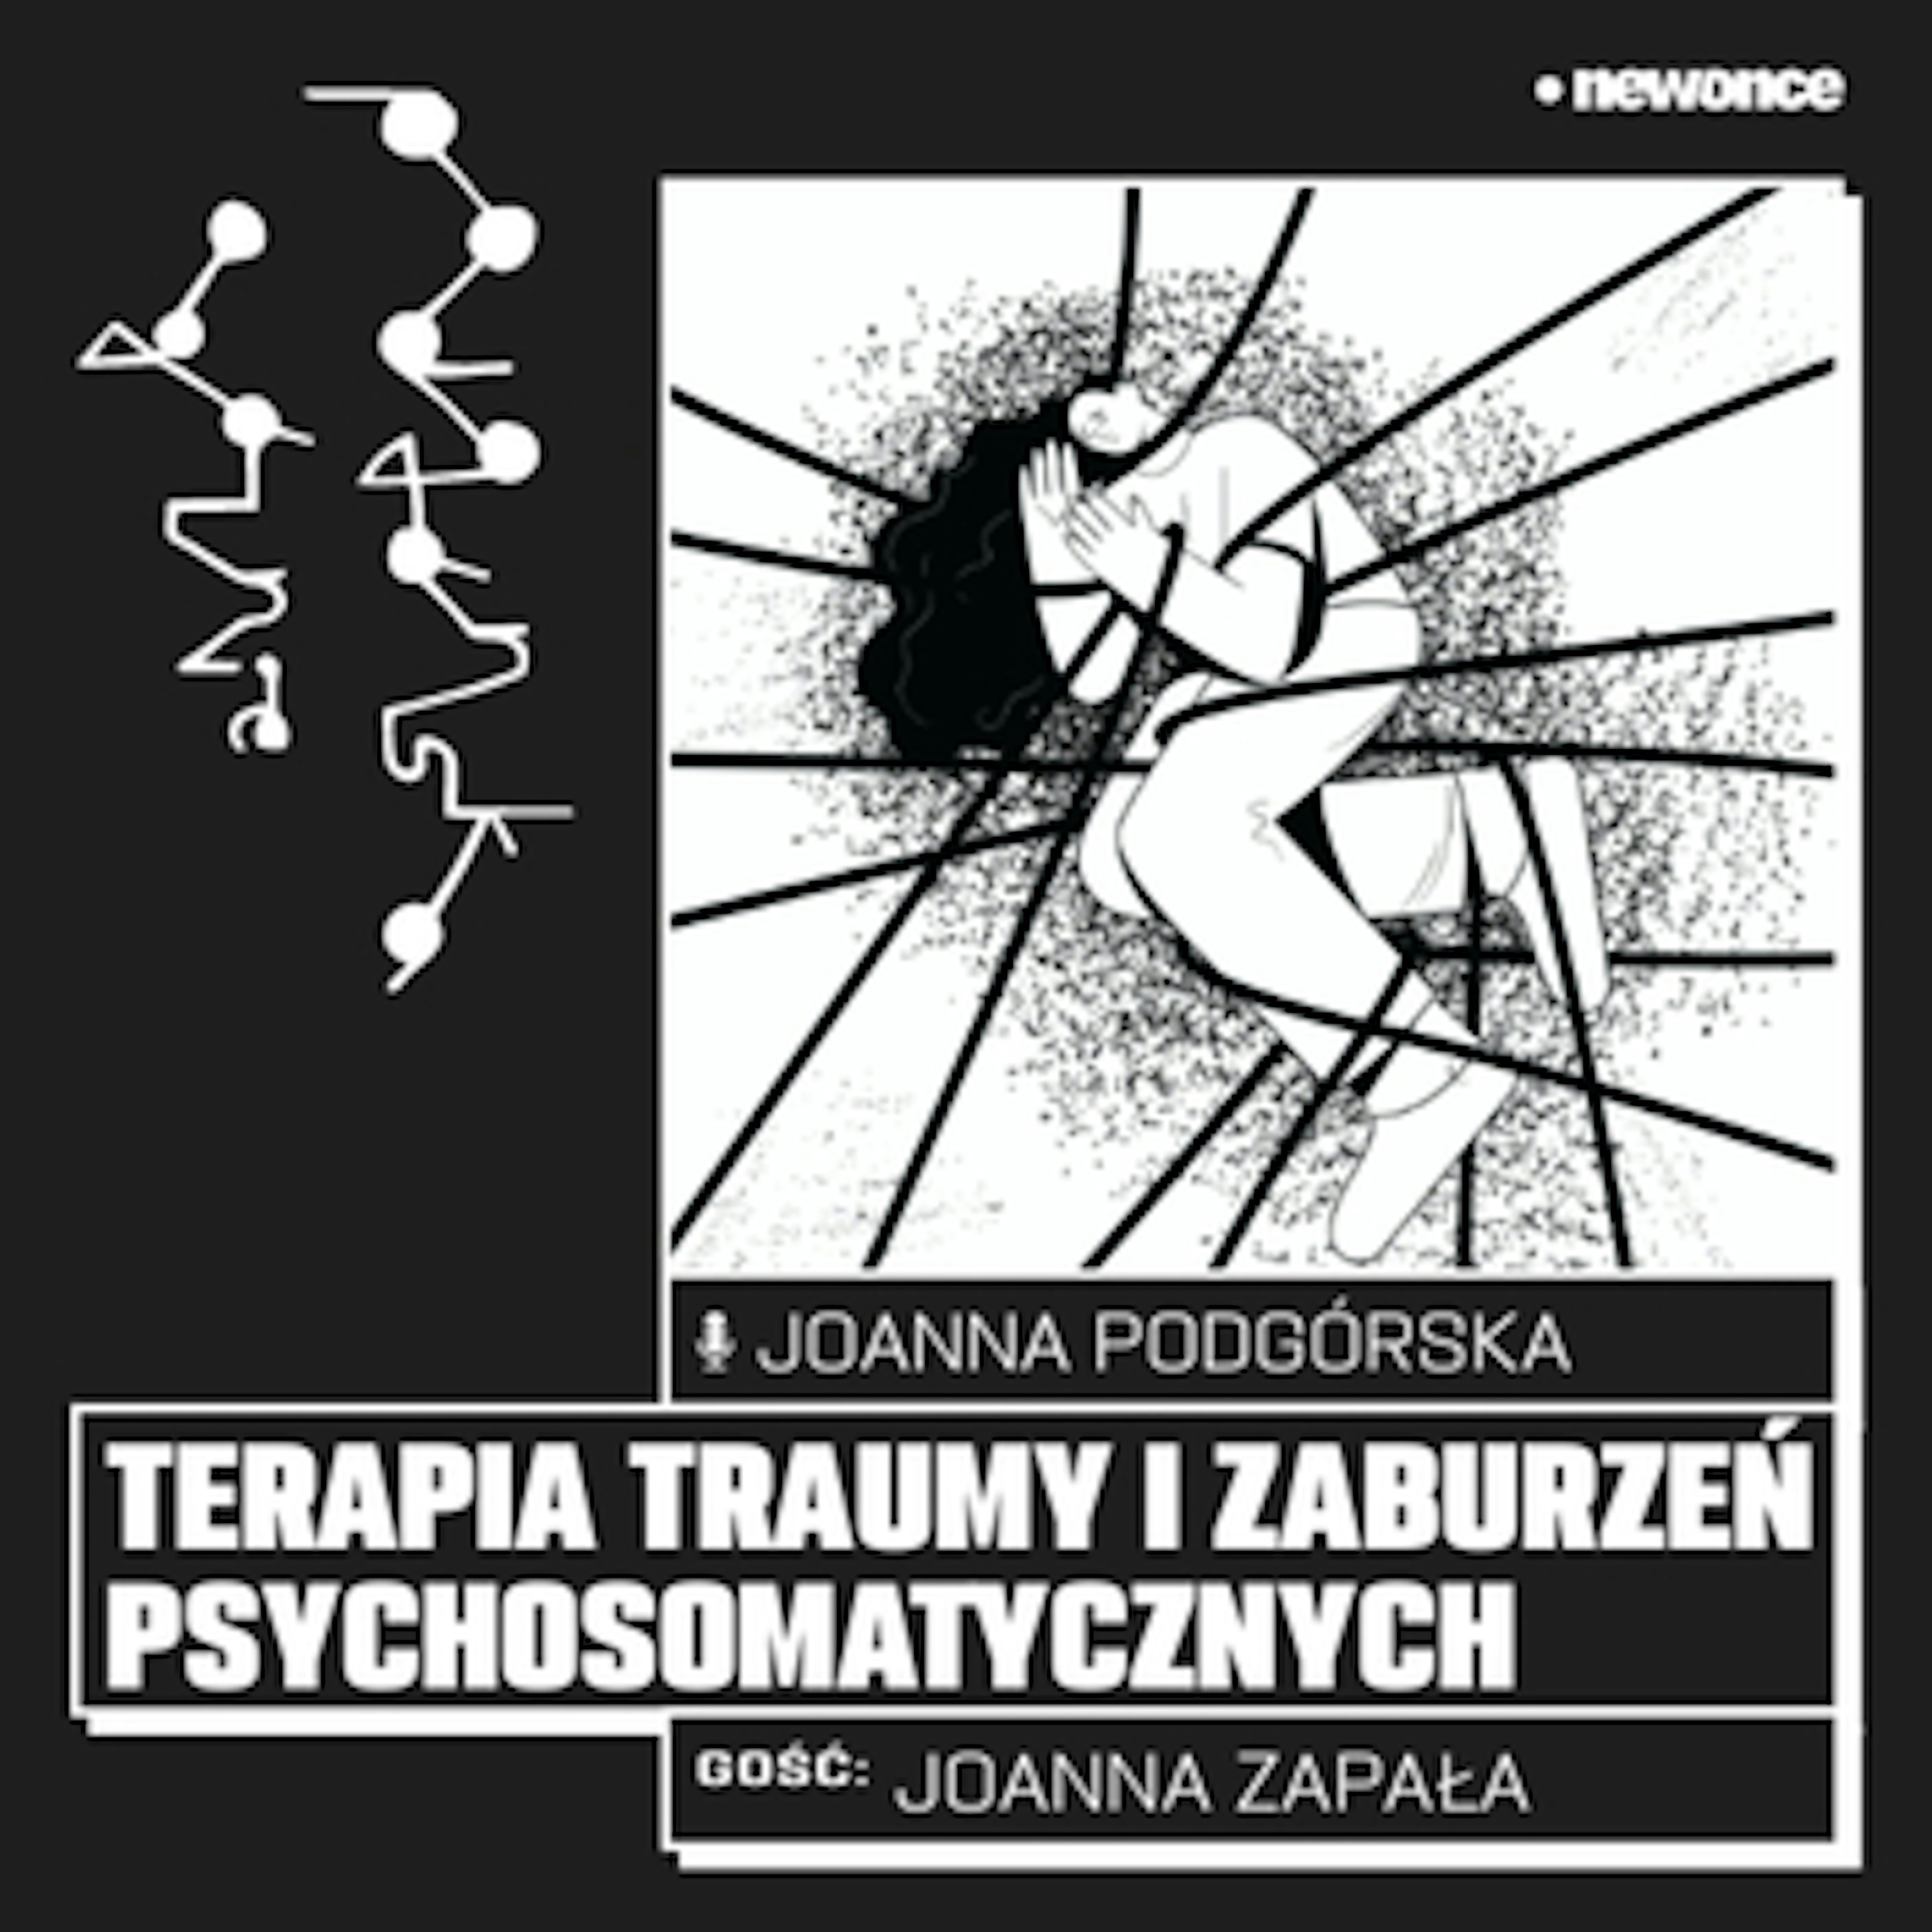 WOJSIAT OGÓLNIE - #12 O terapii traumy i zaburzeń psychosomatycznych